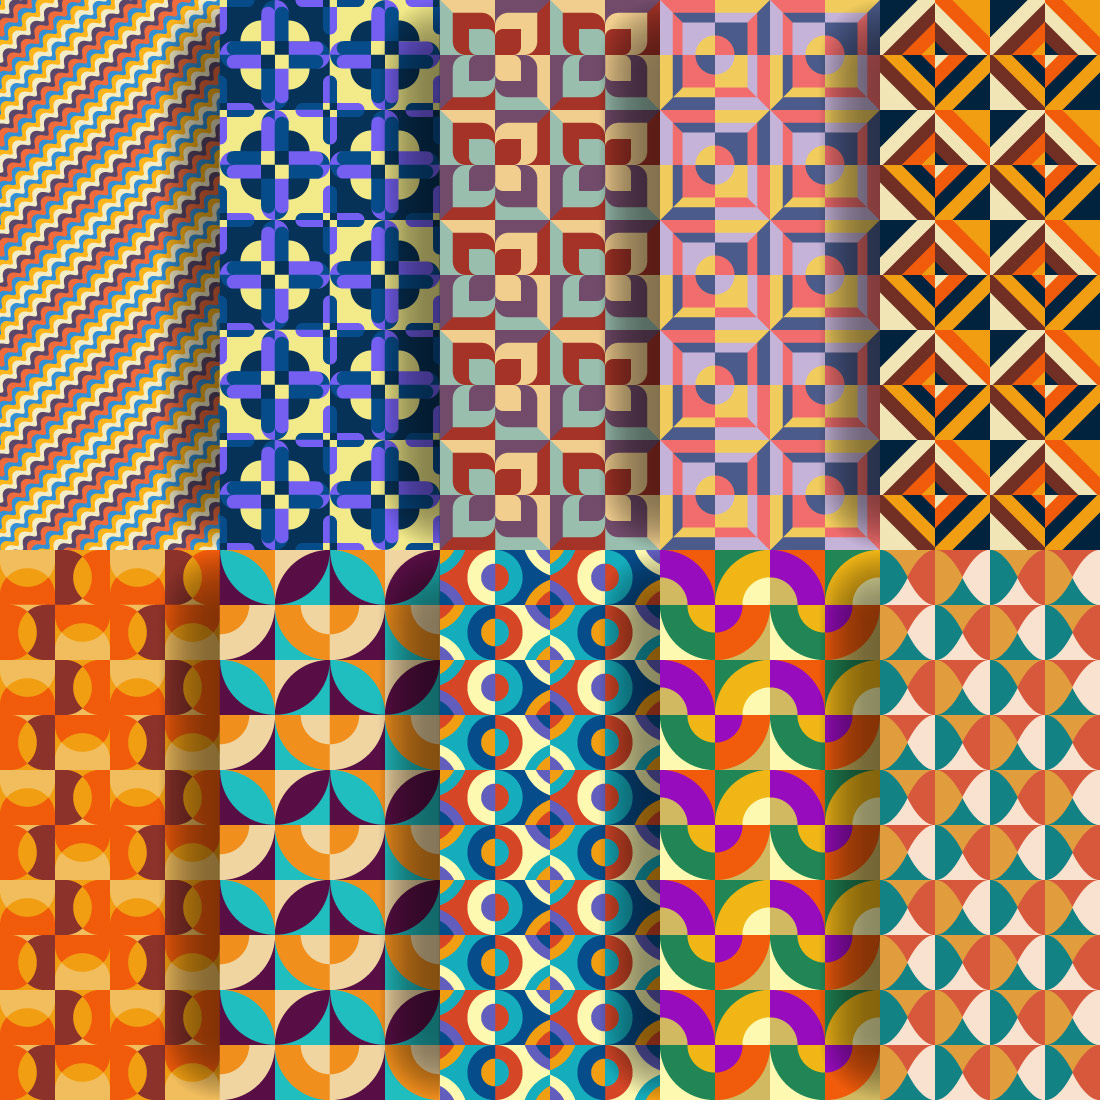 Geometric Retro Patterns Design facebook image.